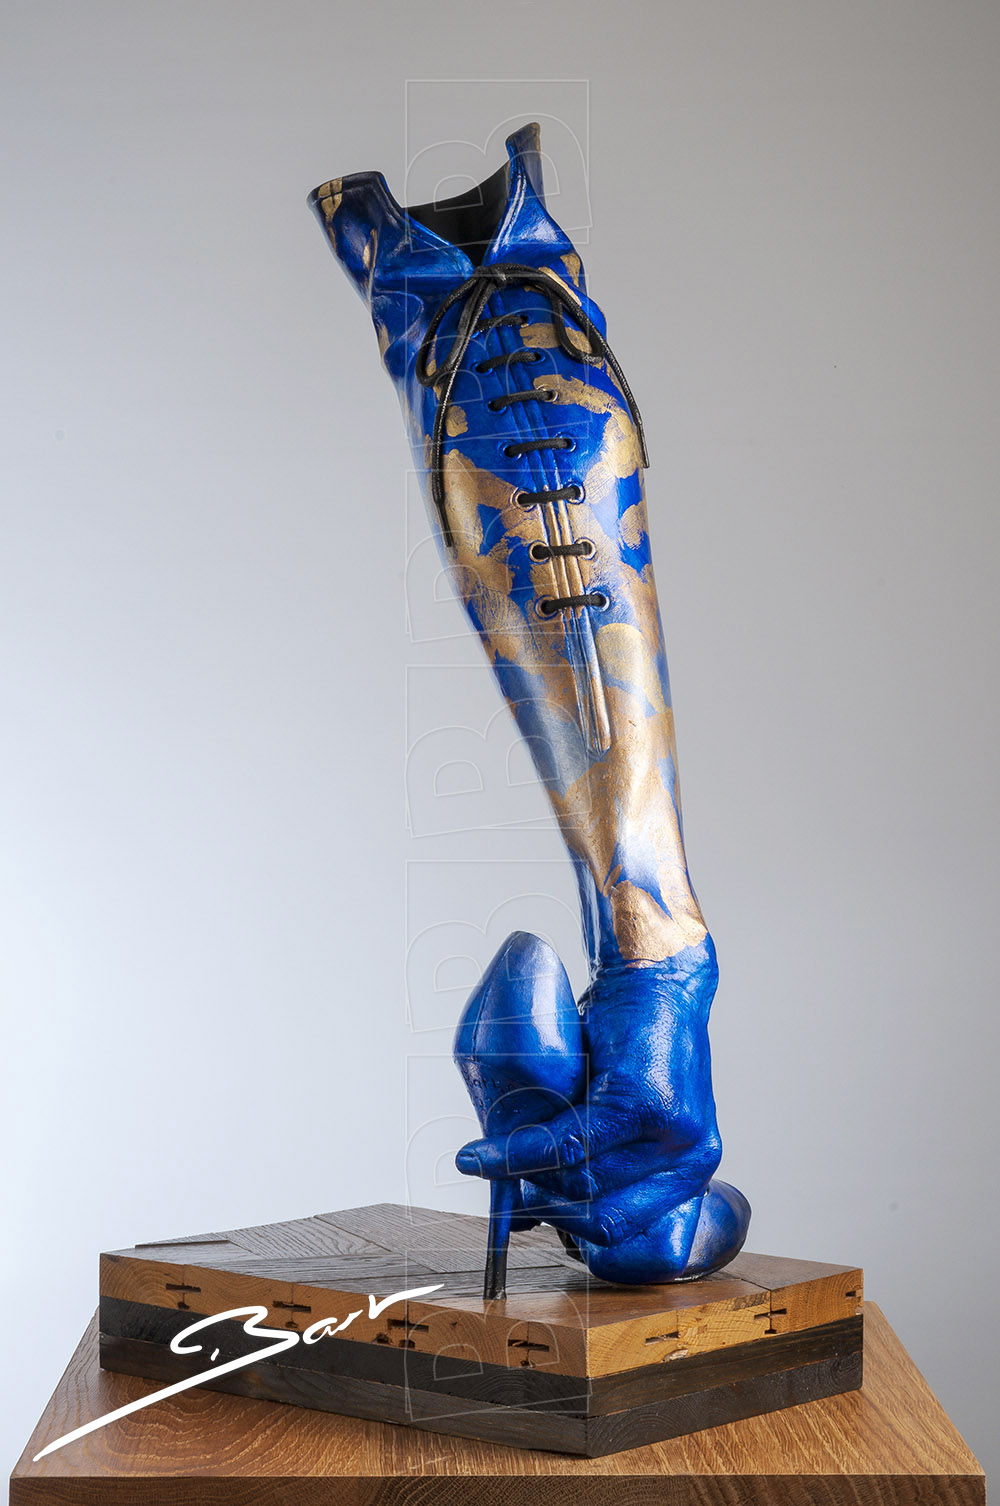 Sculptuur van hand, been en schoen die samen een laars vormen. Sculpture of hand, leg and shoe, together forming a boot.